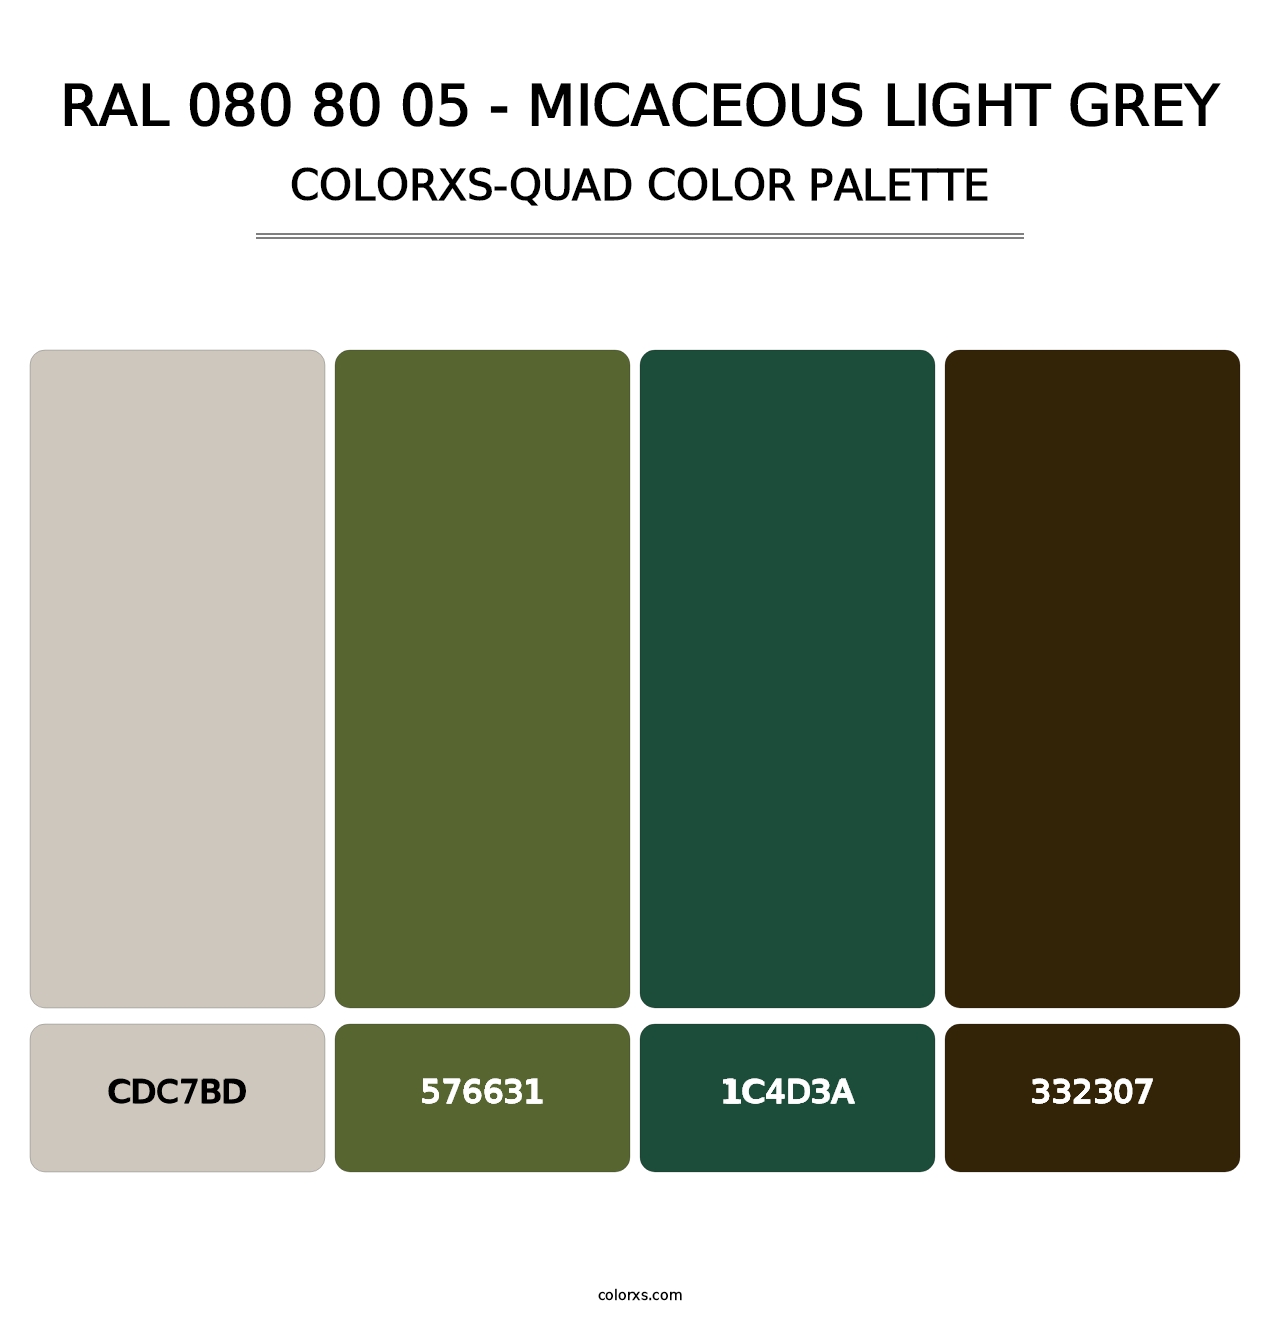 RAL 080 80 05 - Micaceous Light Grey - Colorxs Quad Palette